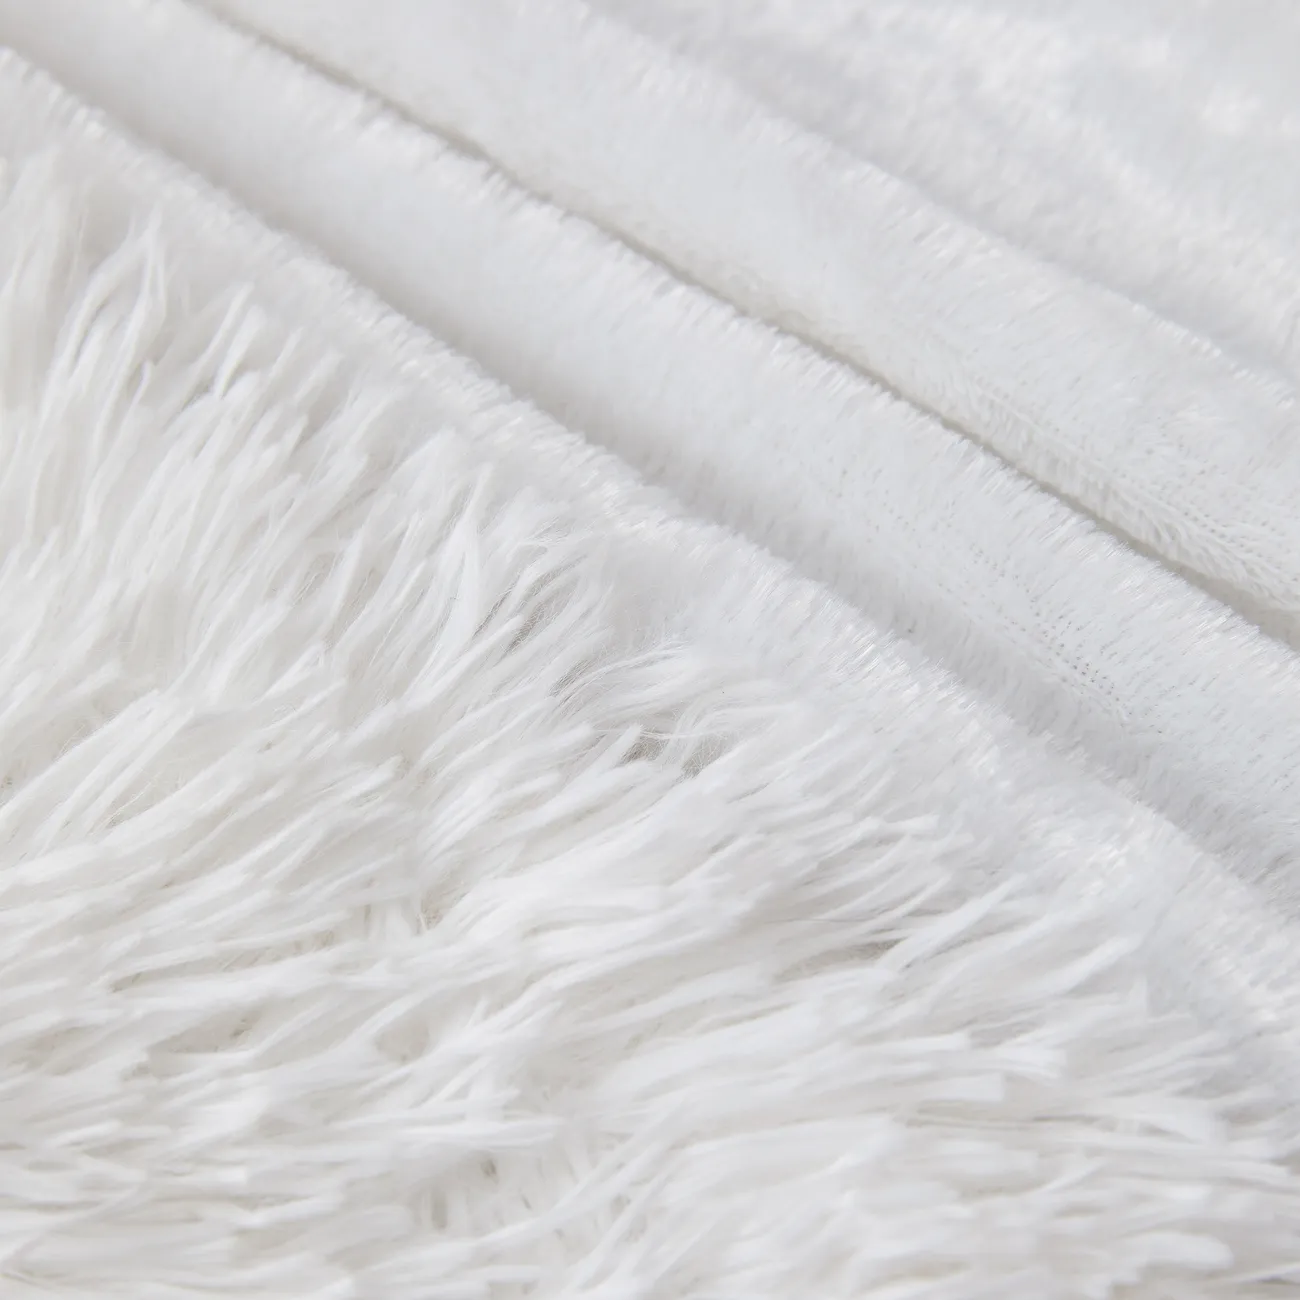 بطانية صوف PV بيضاء فاخرة - فائقة النعومة ومتينة وقابلة للغسل في الغسالة - مثالية للراحة المنزلية والديكور الأنيق أبيض big image 1